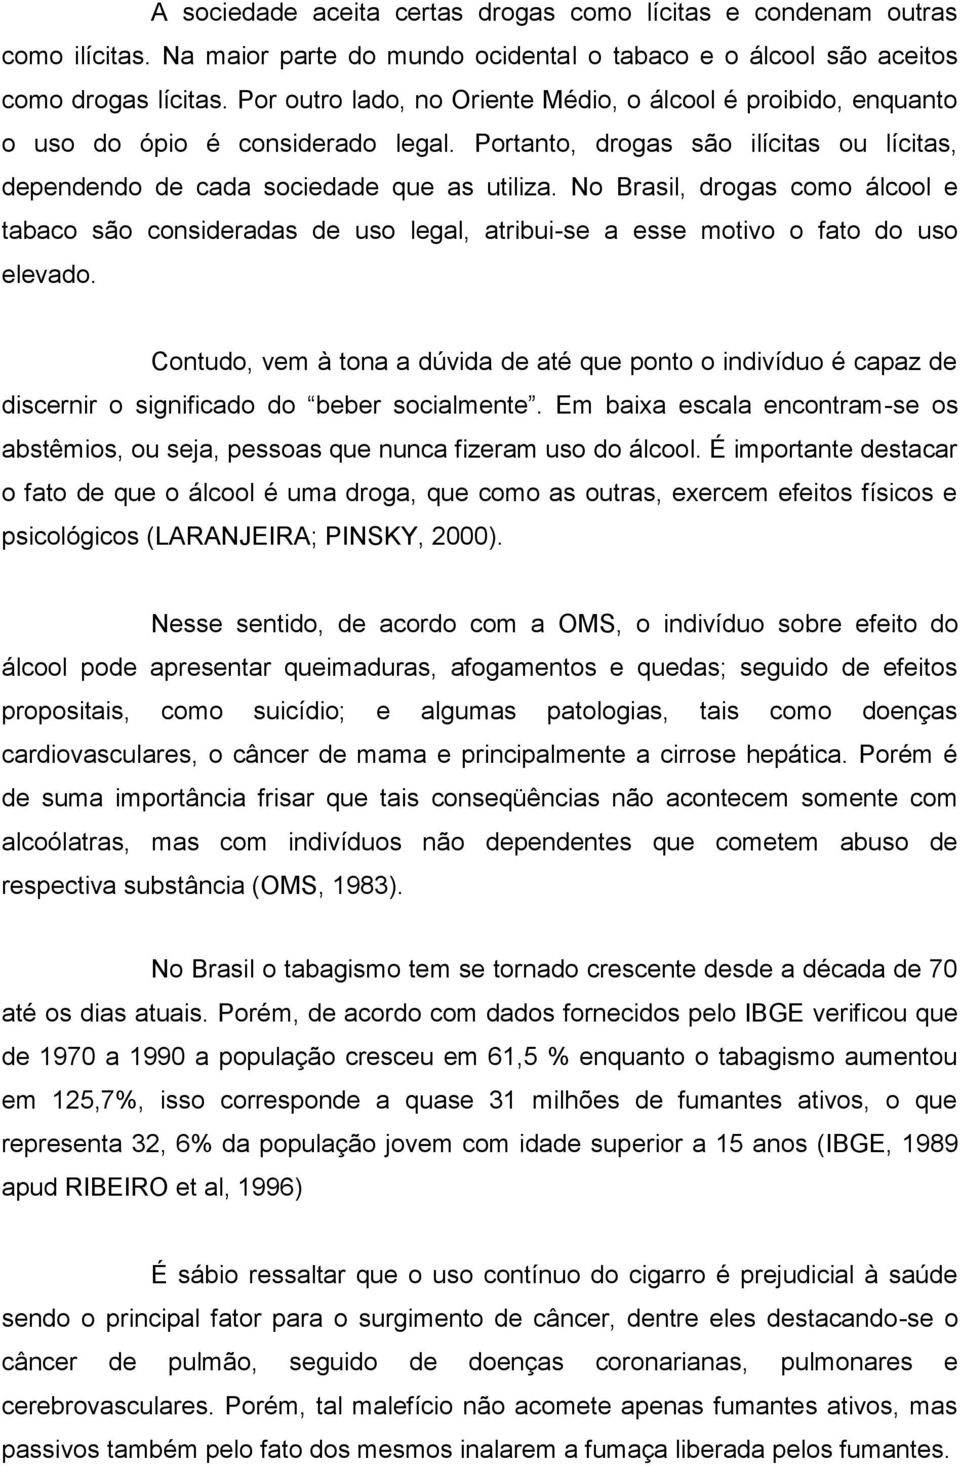 No Brasil, drogas como álcool e tabaco são consideradas de uso legal, atribui-se a esse motivo o fato do uso elevado.